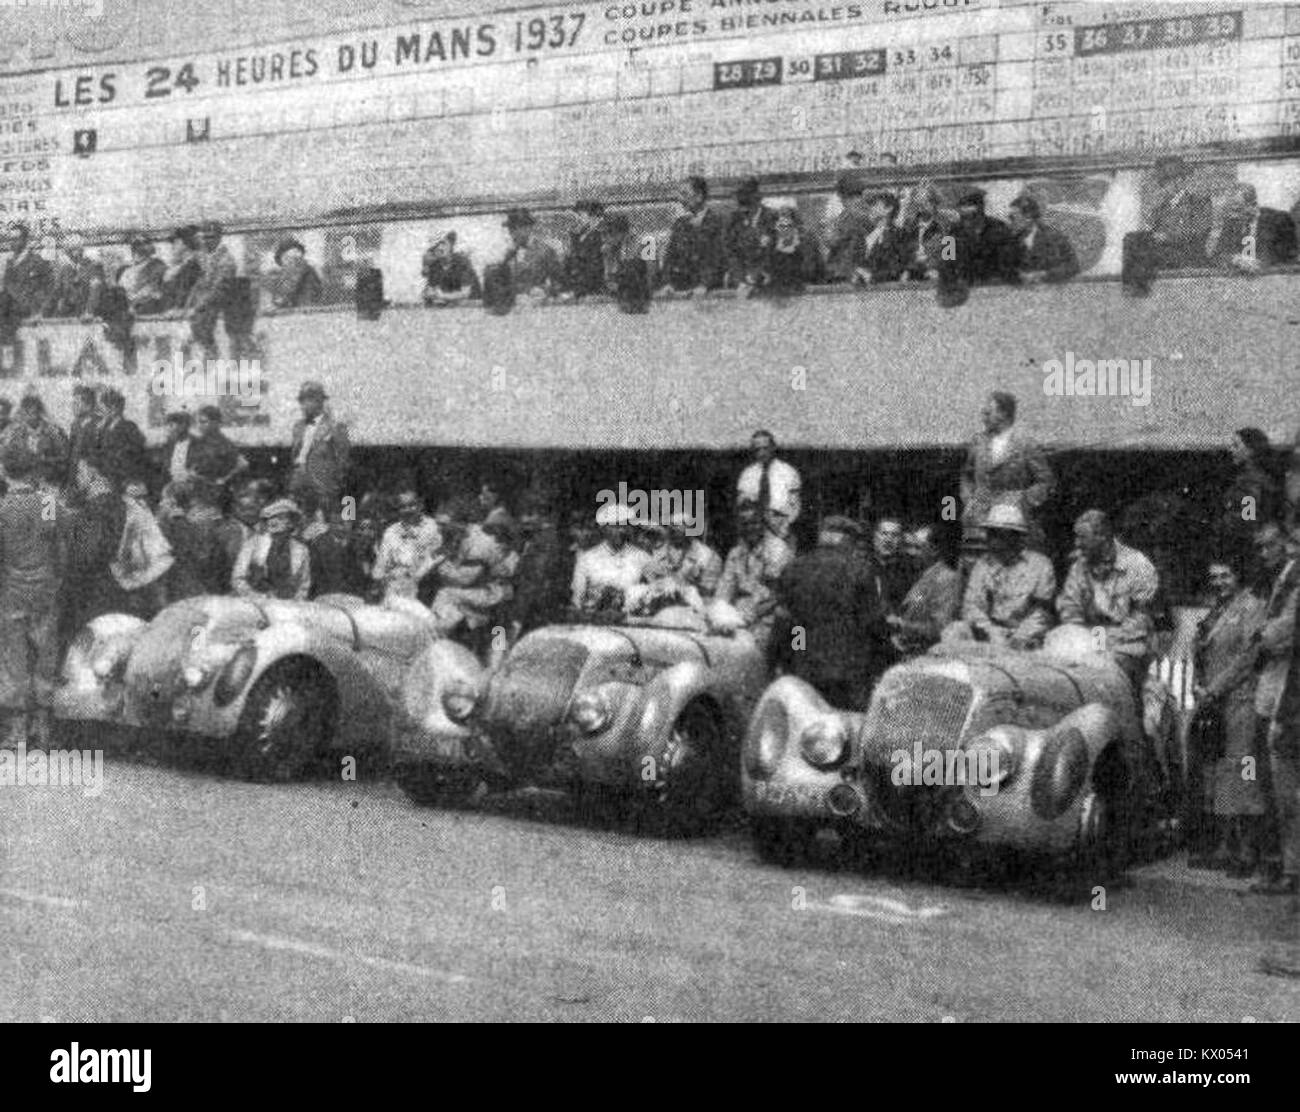 L'équipe Peugeot aux 24 Heures du Mans 1937 (seule complète à l'arrivée) Stock Photo